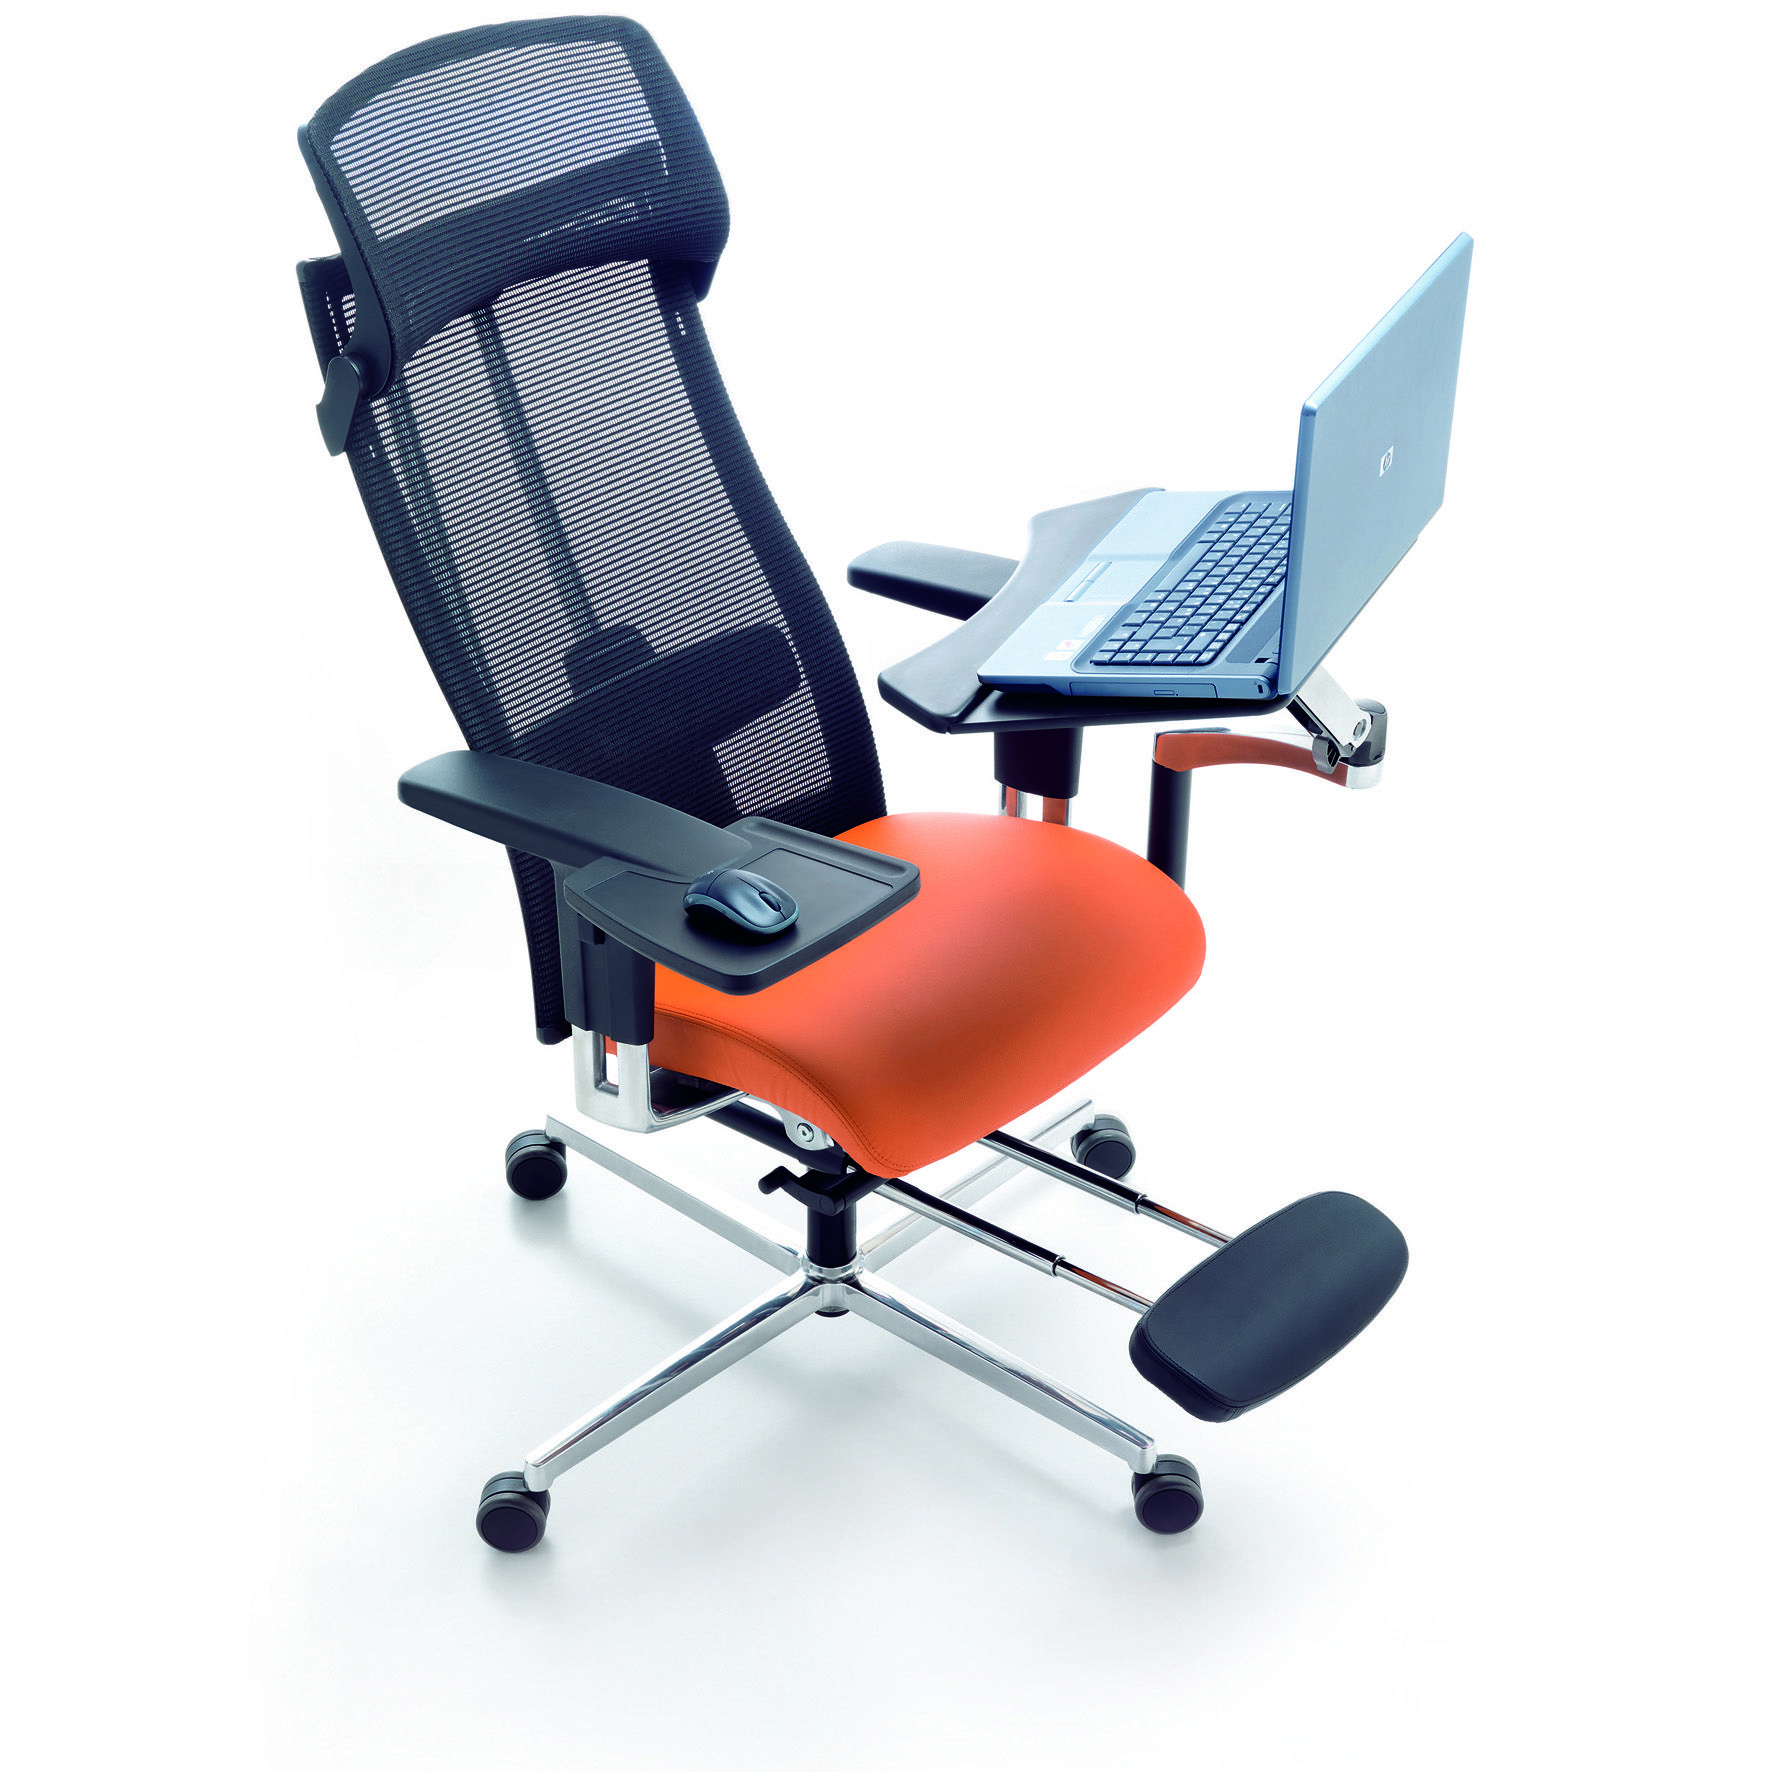 Ergonomic recliner chair reviews